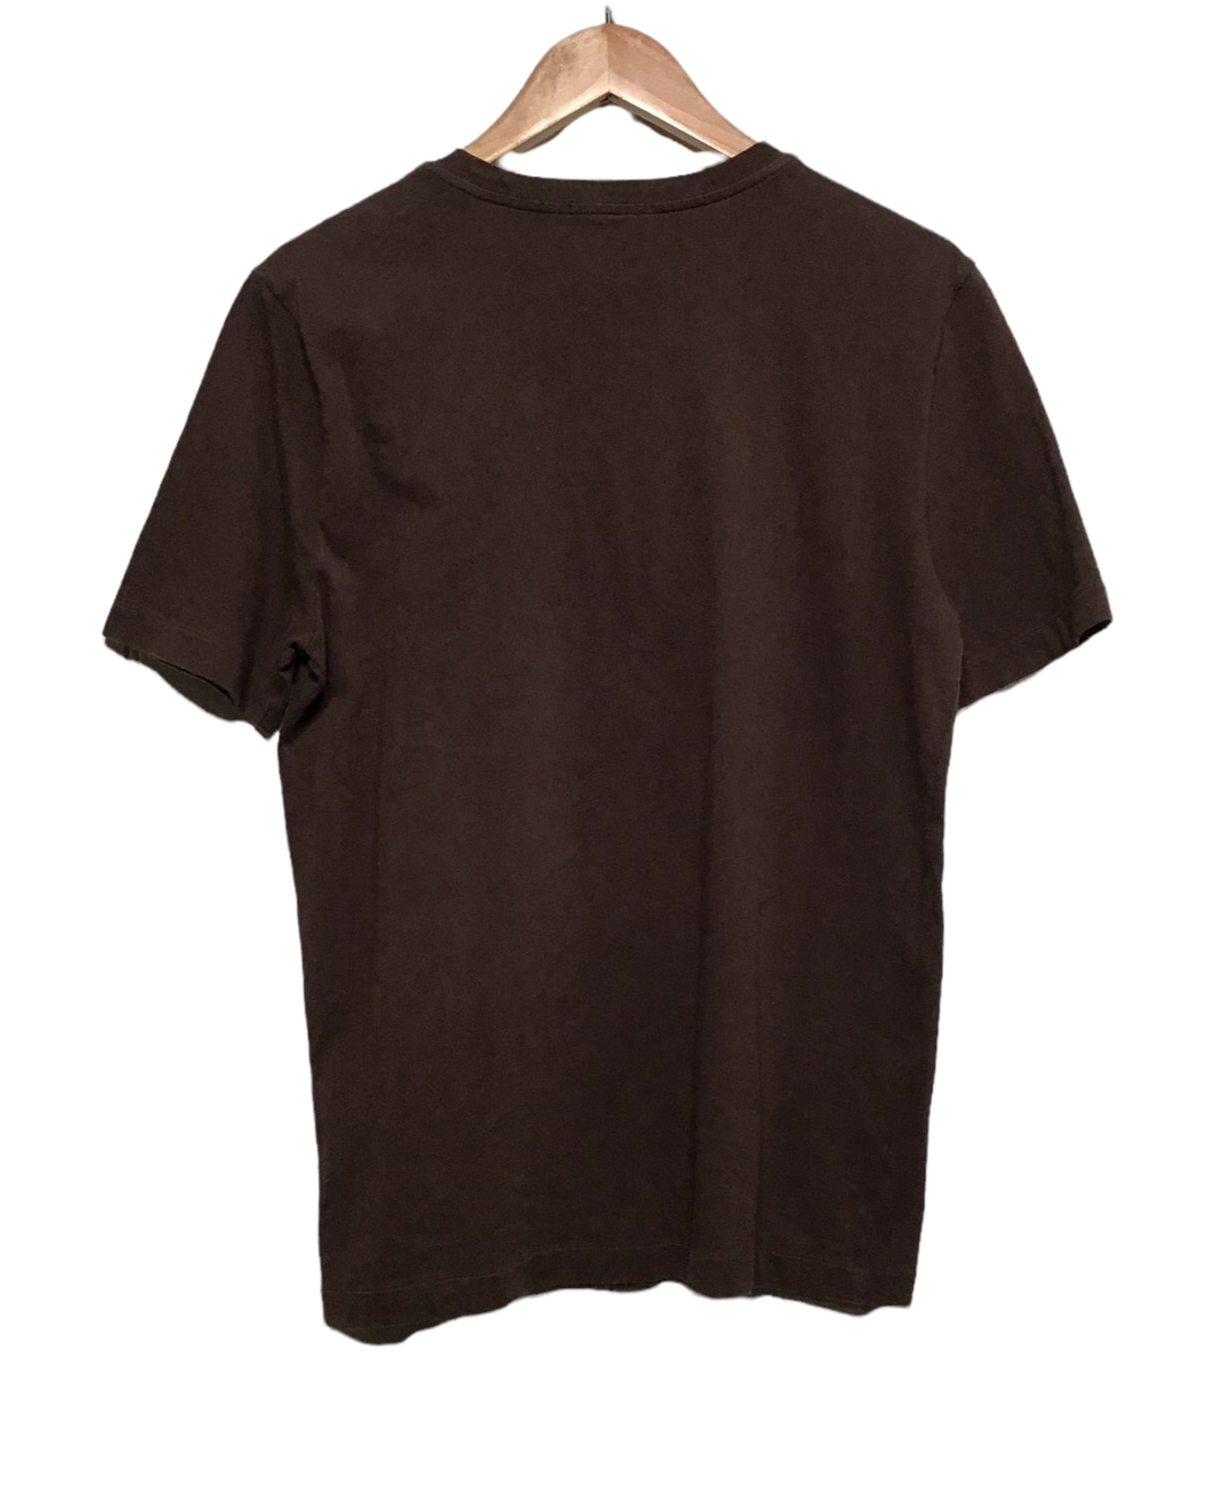 Louis Vuitton T-Shirt (Size L)